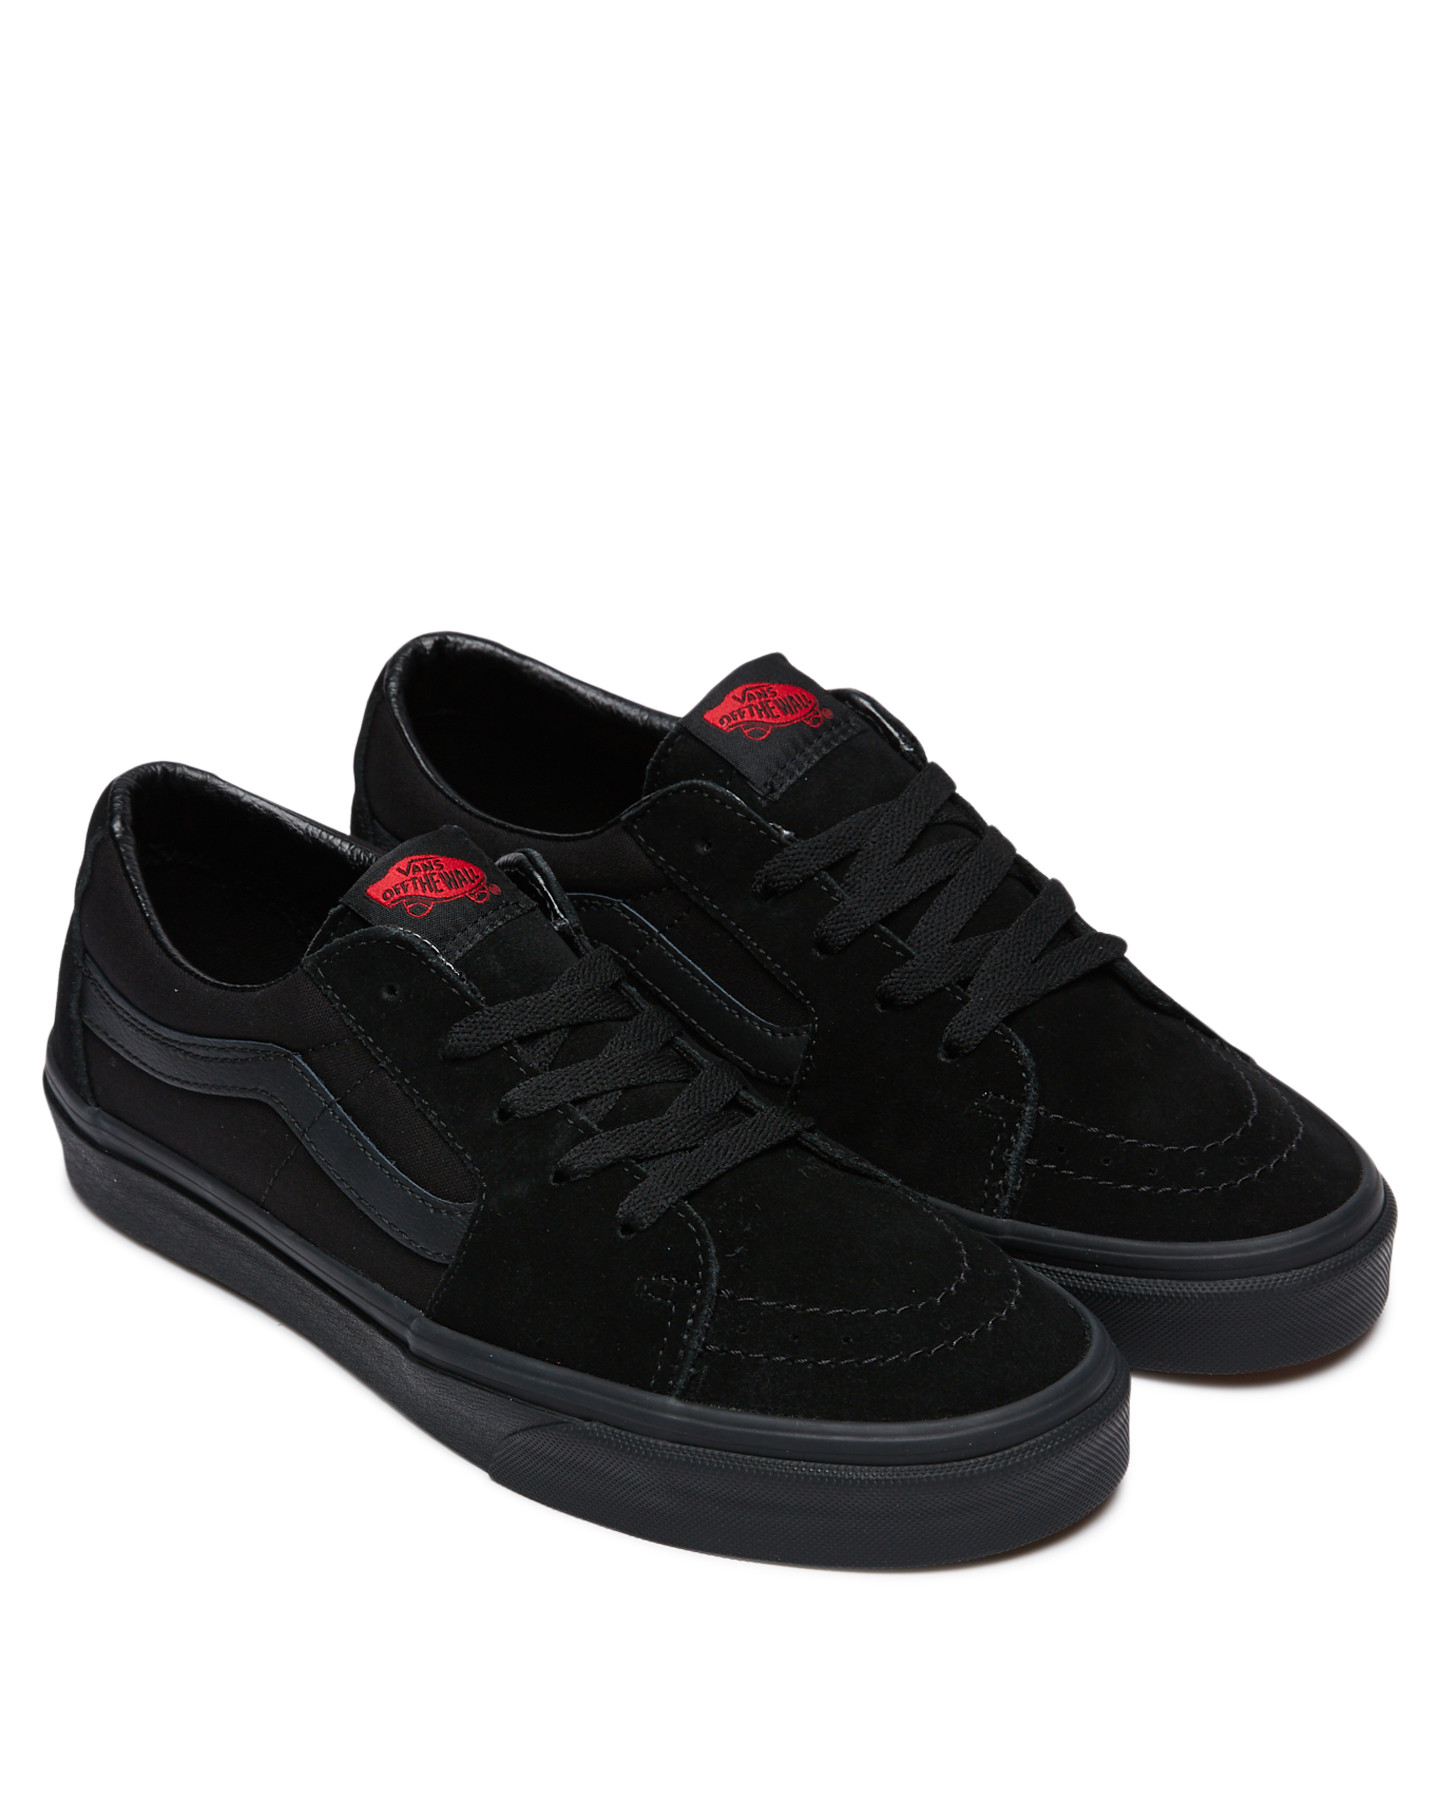 Vans Mens Sk8 Low Shoe Black Black SurfStitch